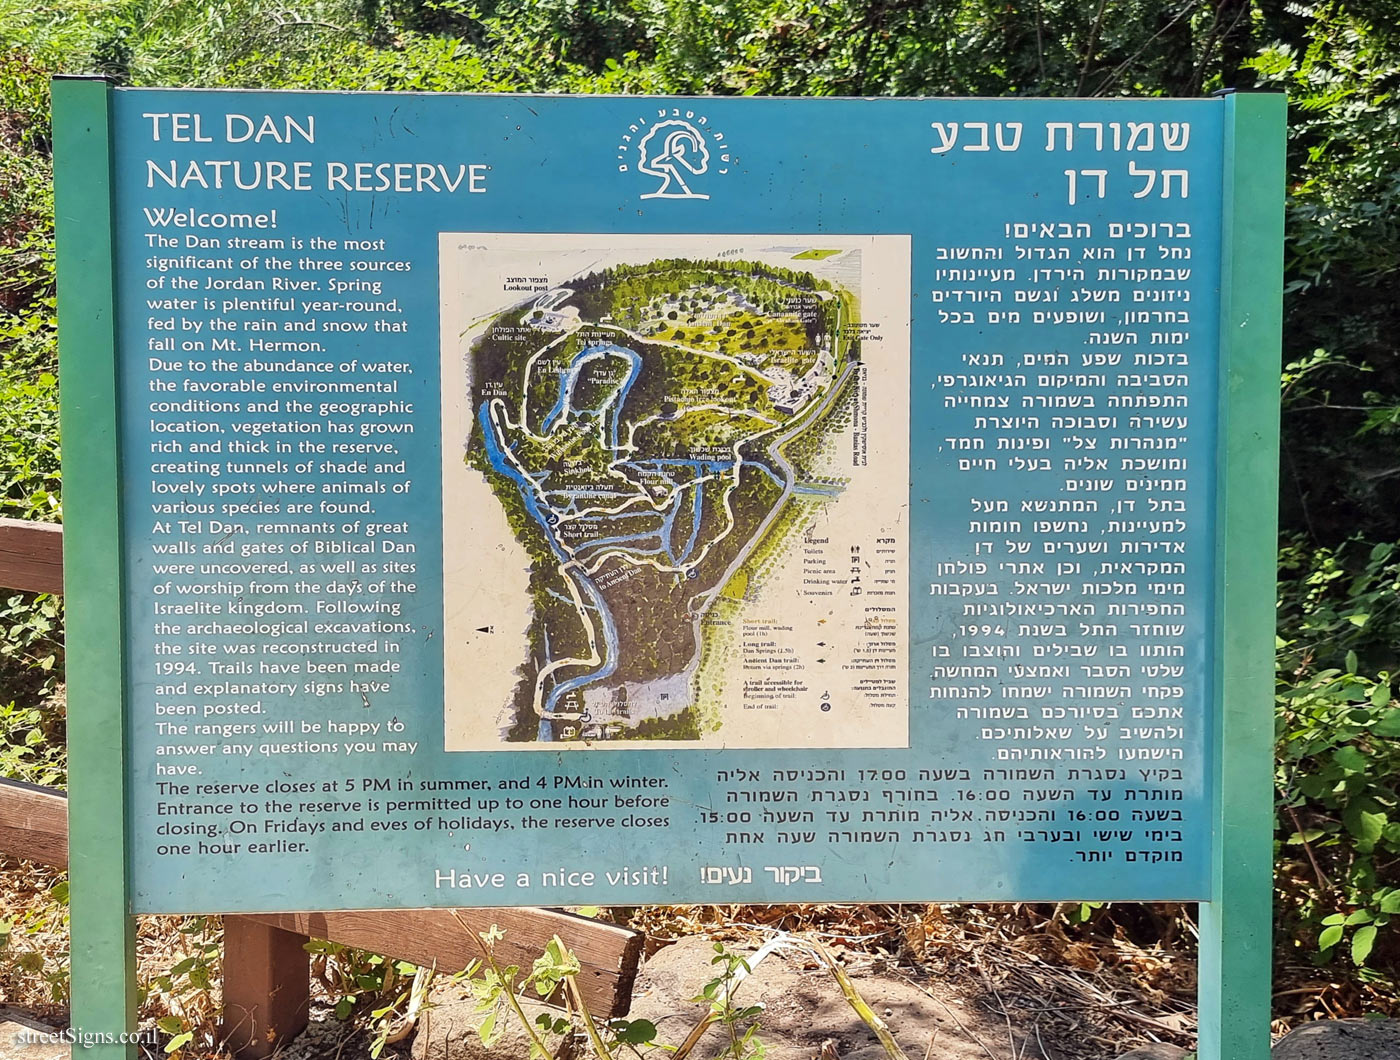 Tel Dan Nature Reserve